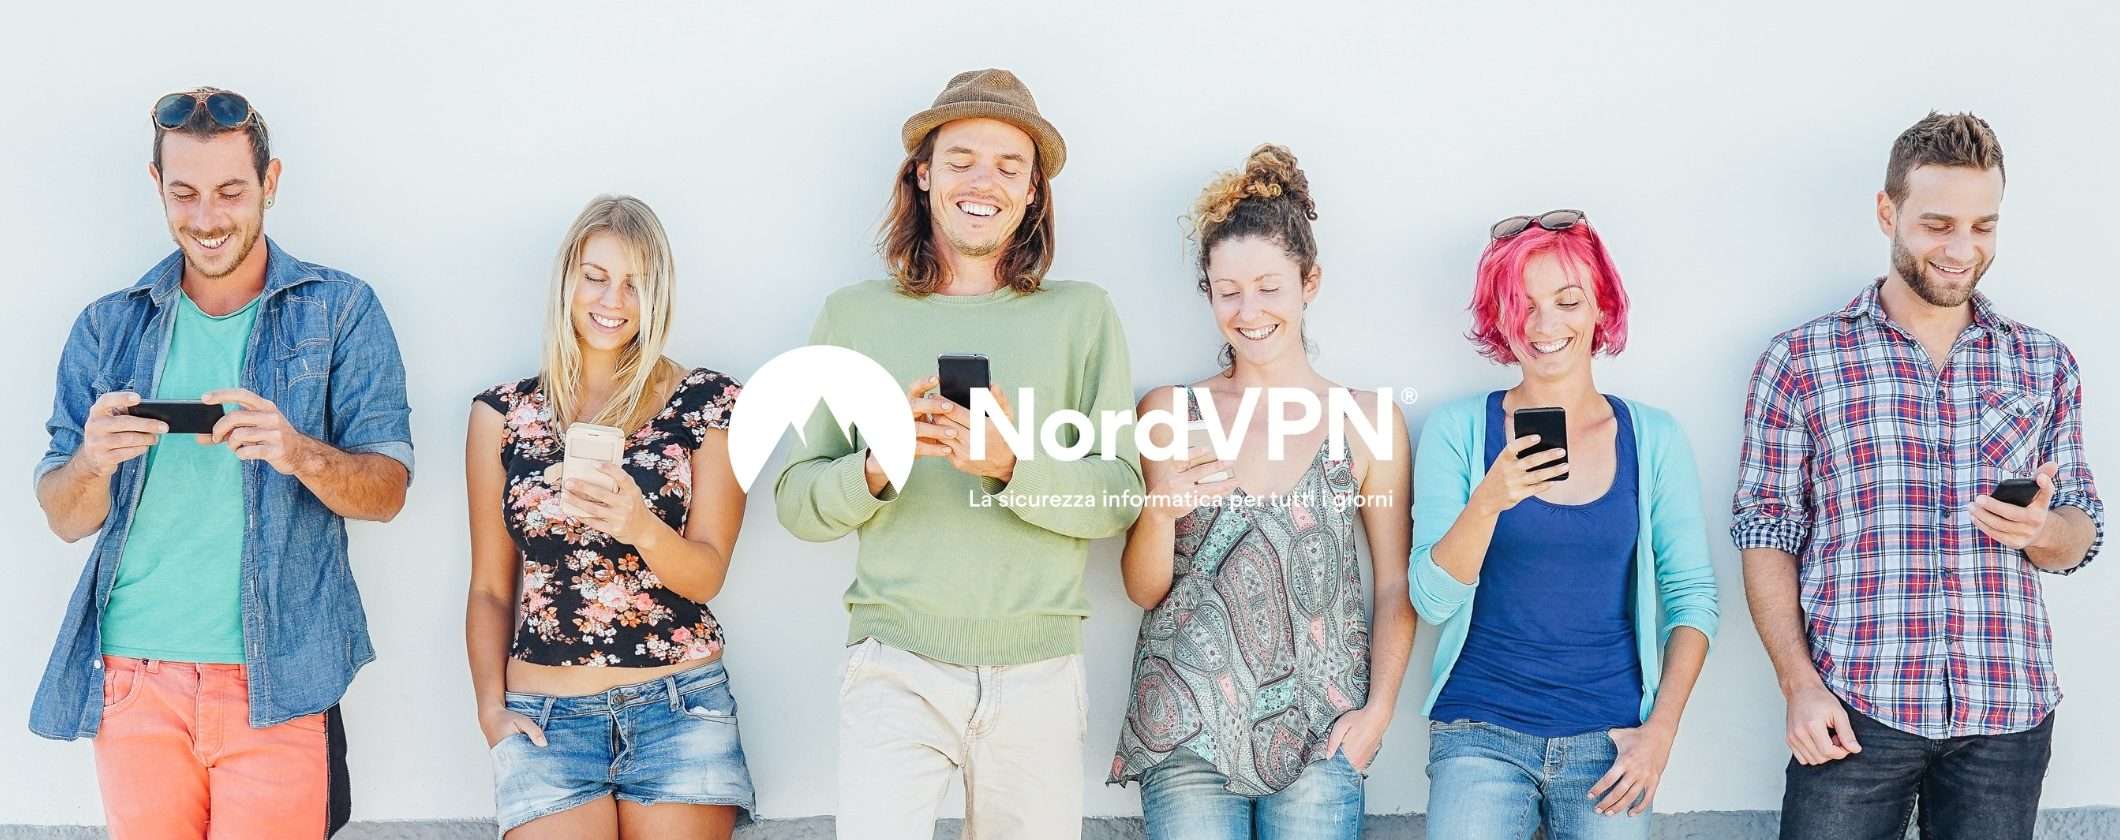 NordVPN è unica: ecco perché questa VPN batte tutte le altre